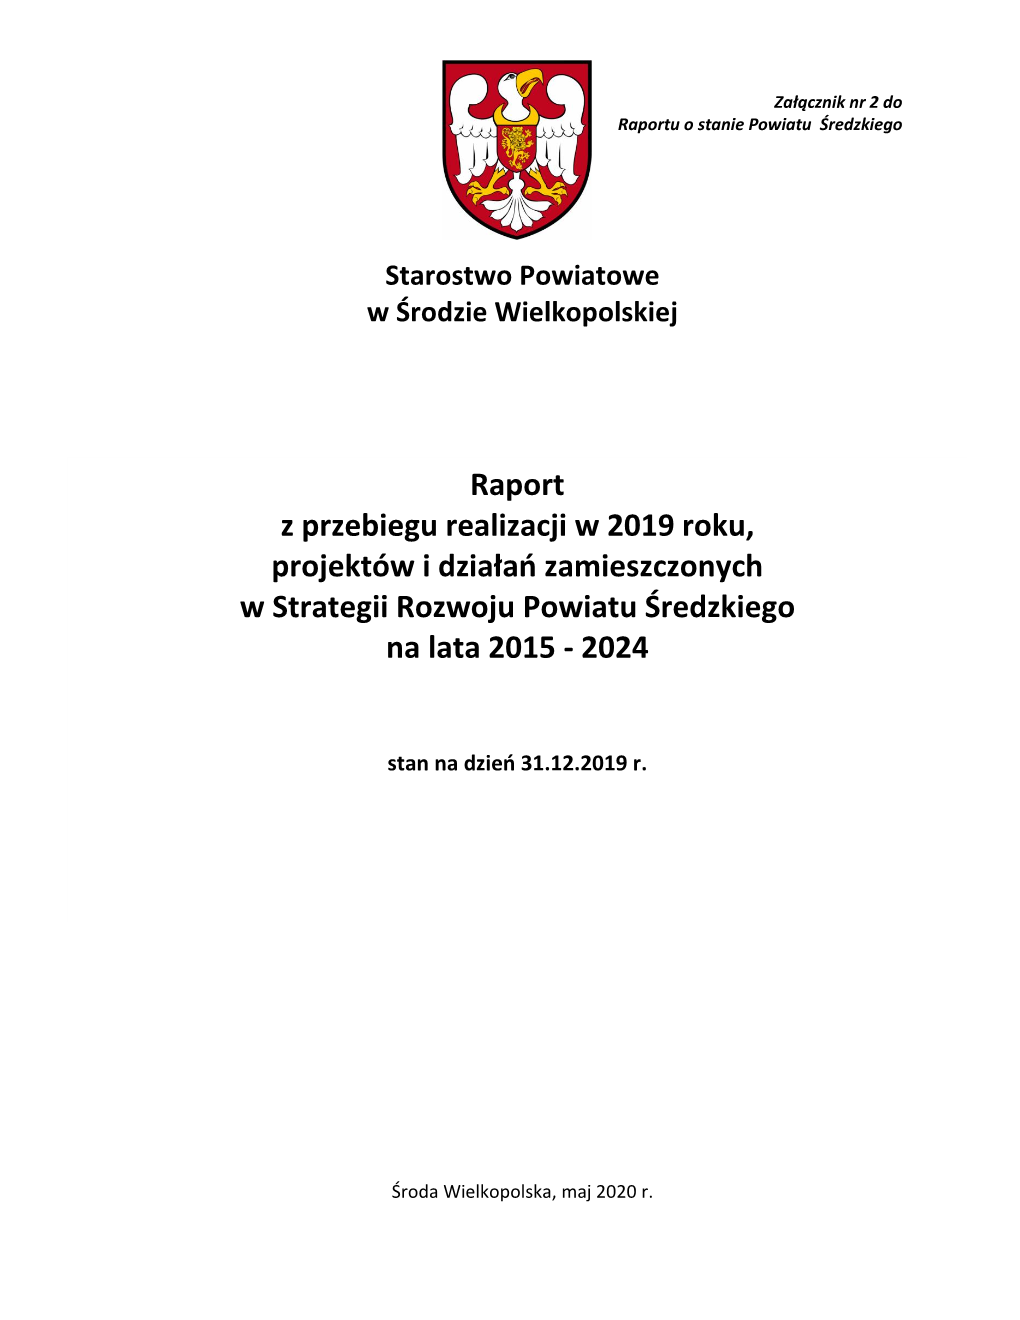 Raport Z Przebiegu Realizacji W 2019 Roku, Projektów I Działań Zamieszczonych W Strategii Rozwoju Powiatu Średzkiego Na Lata 2015 - 2024